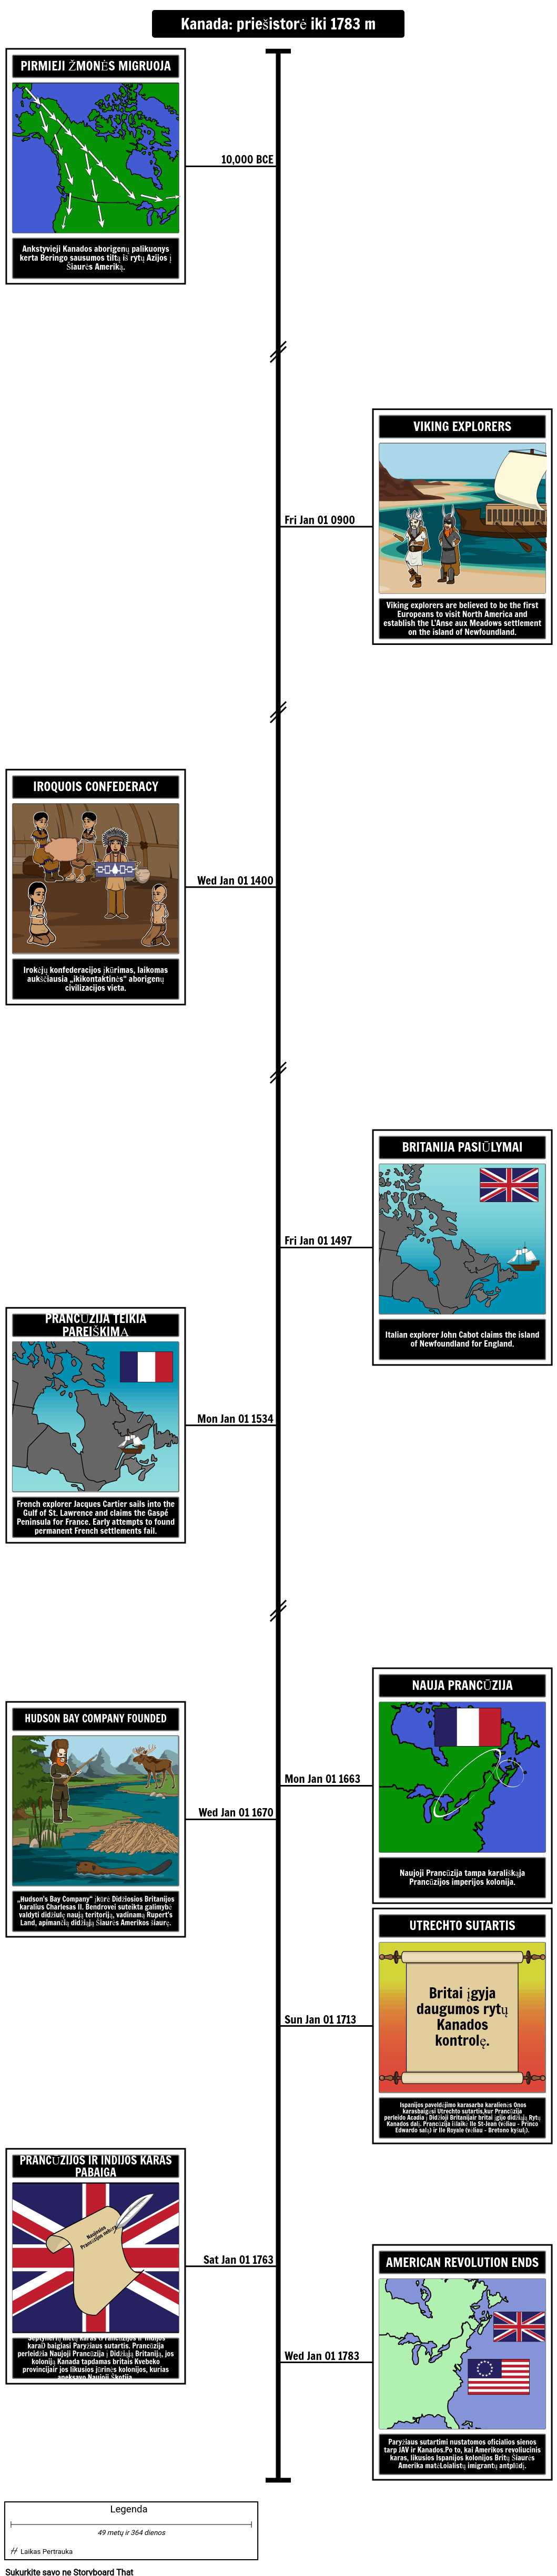 Kanados istorijos laiko juosta Prieš istoriją iki 1783 m